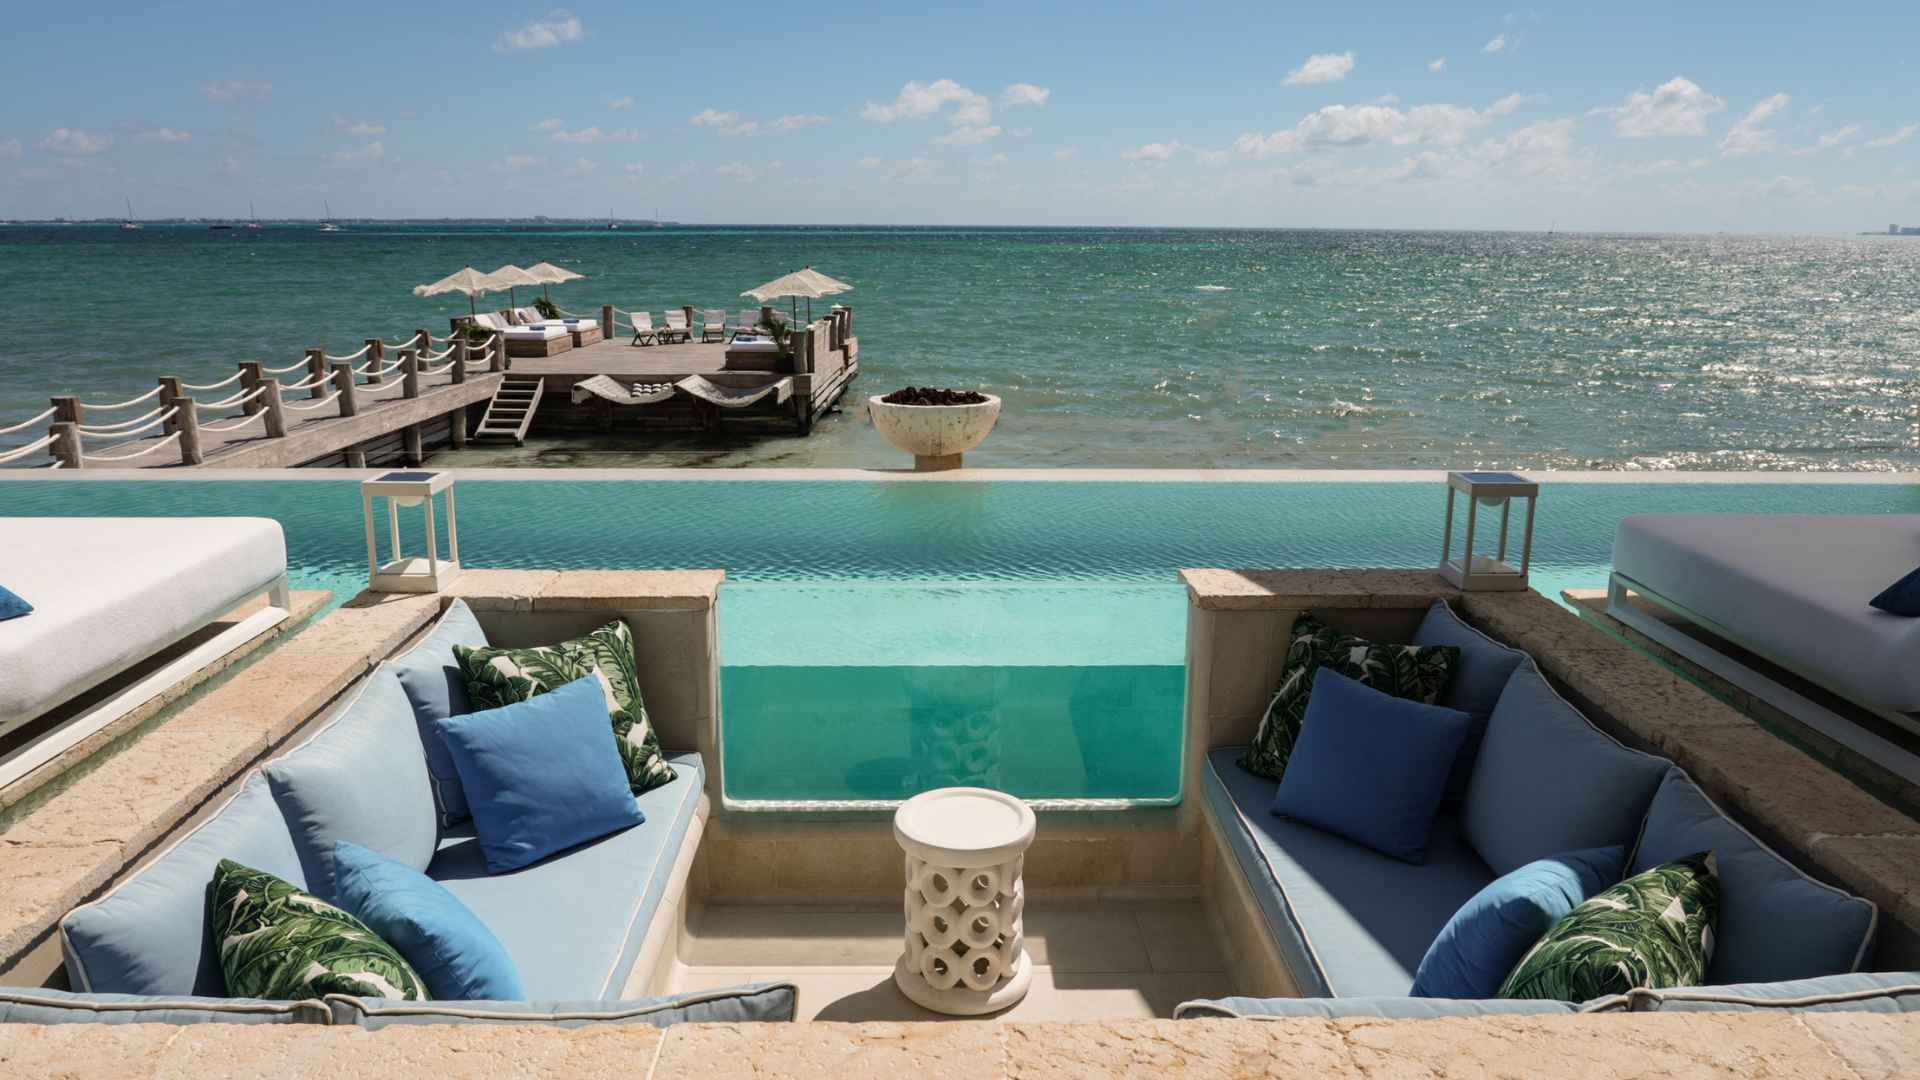 Villa Sha - Cancun